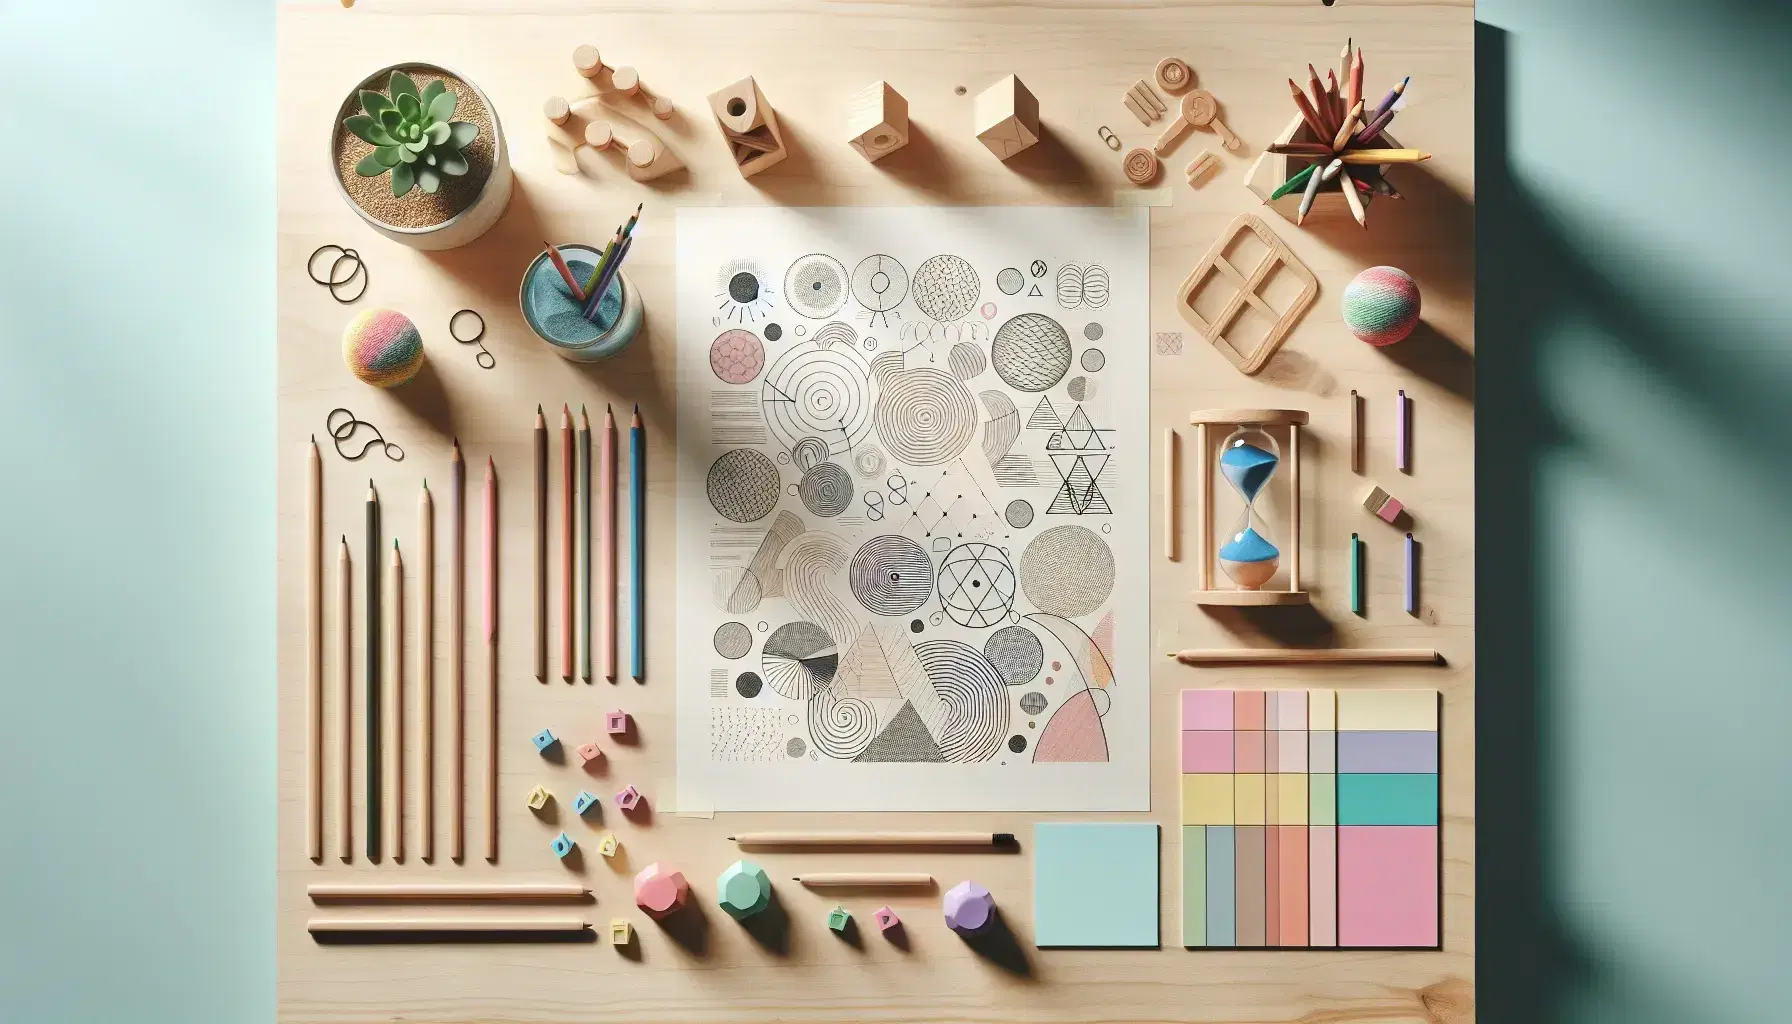 Mesa de trabajo de madera clara con papel de dibujos abstractos, lápices de colores, notas adhesivas pastel, reloj de arena con arena azul y figuras geométricas de madera.